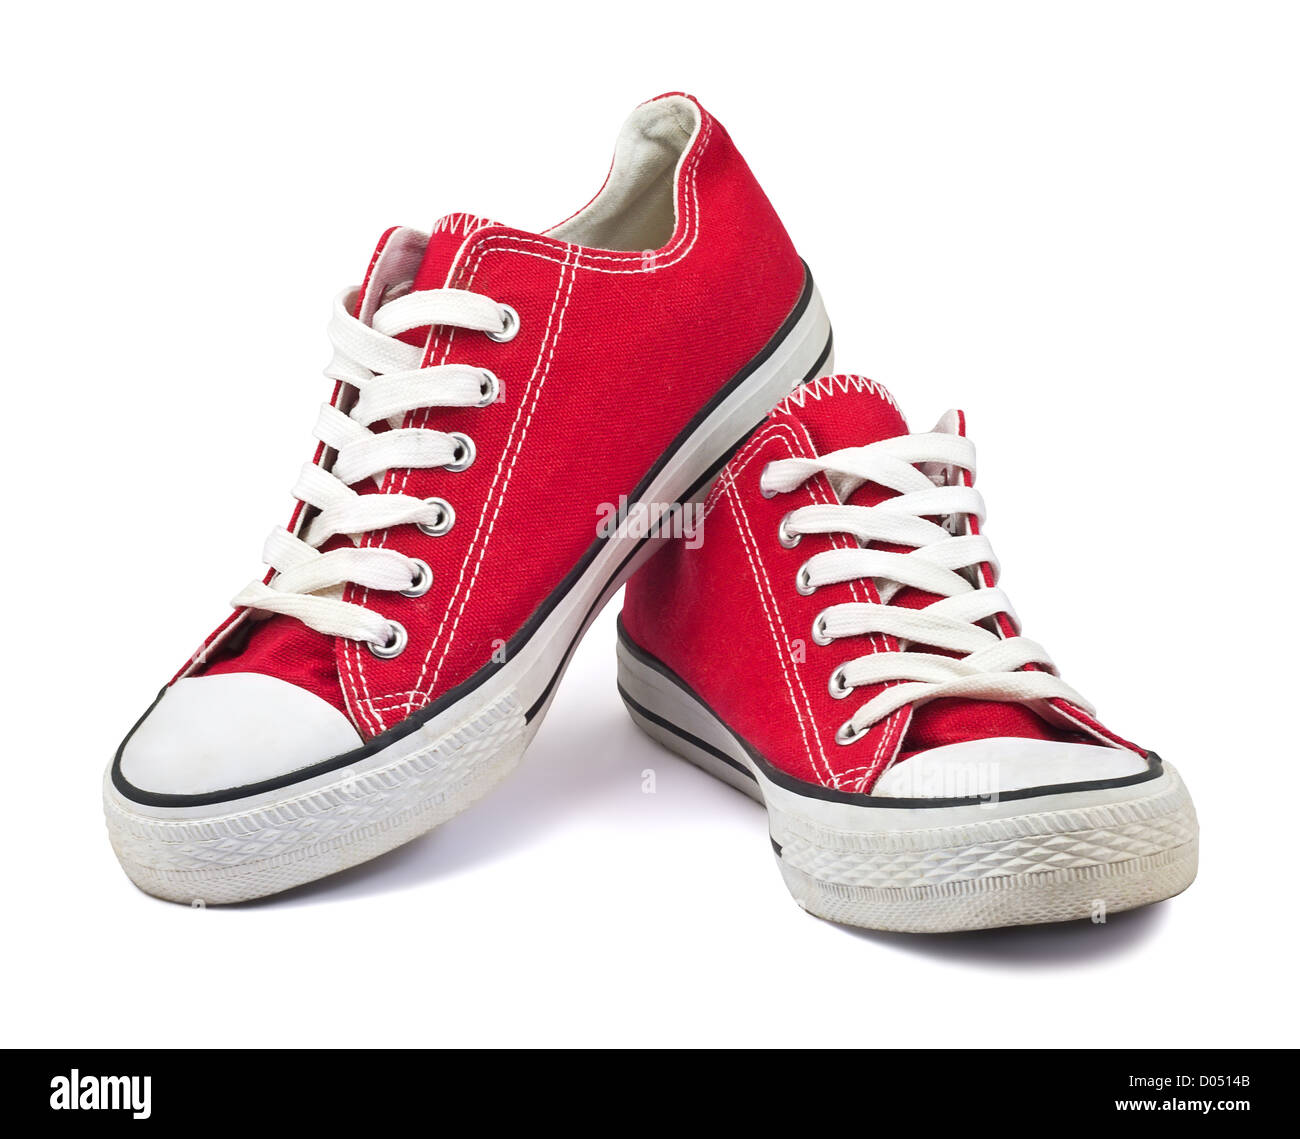 Vintage zapatos rojos sobre fondo blanco Fotografía de Alamy